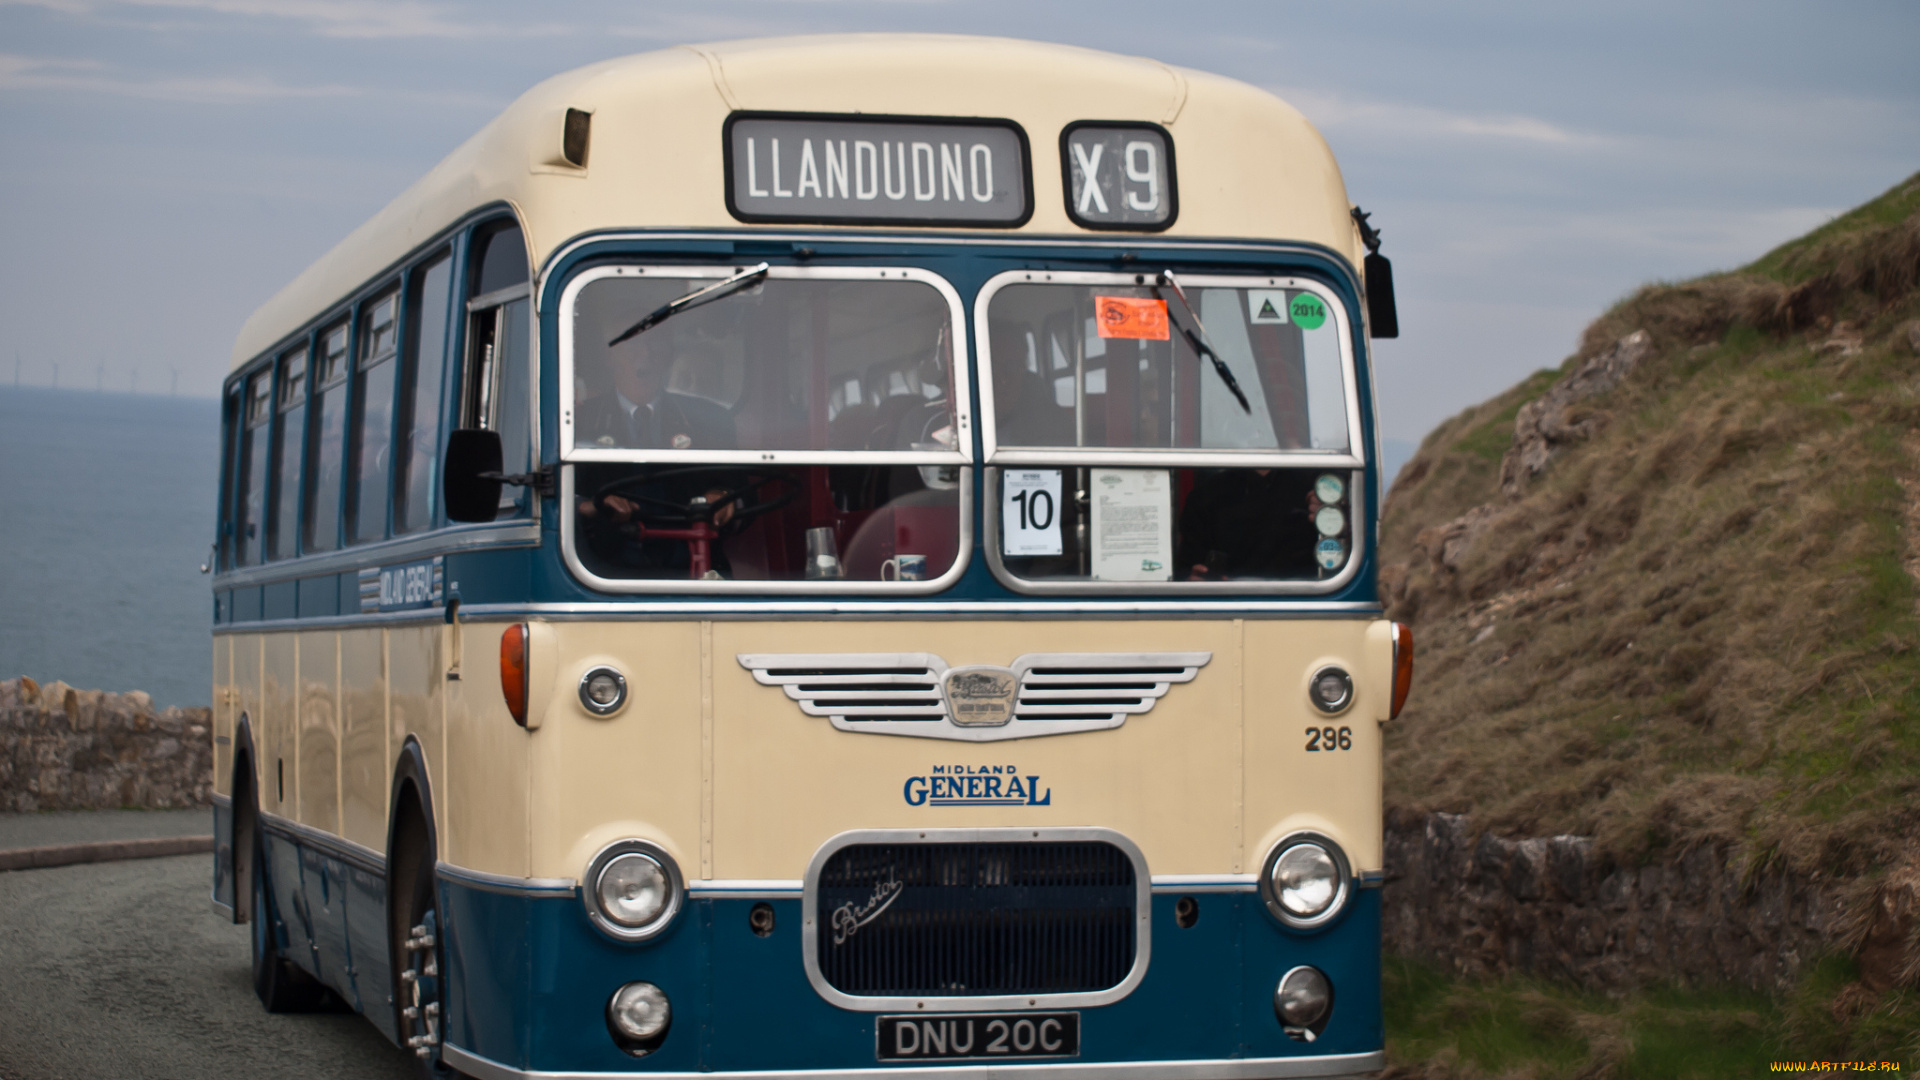 1965, bristol, mw6gecw, midland, general, 296, автомобили, автобусы, общественный, транспорт, автобус